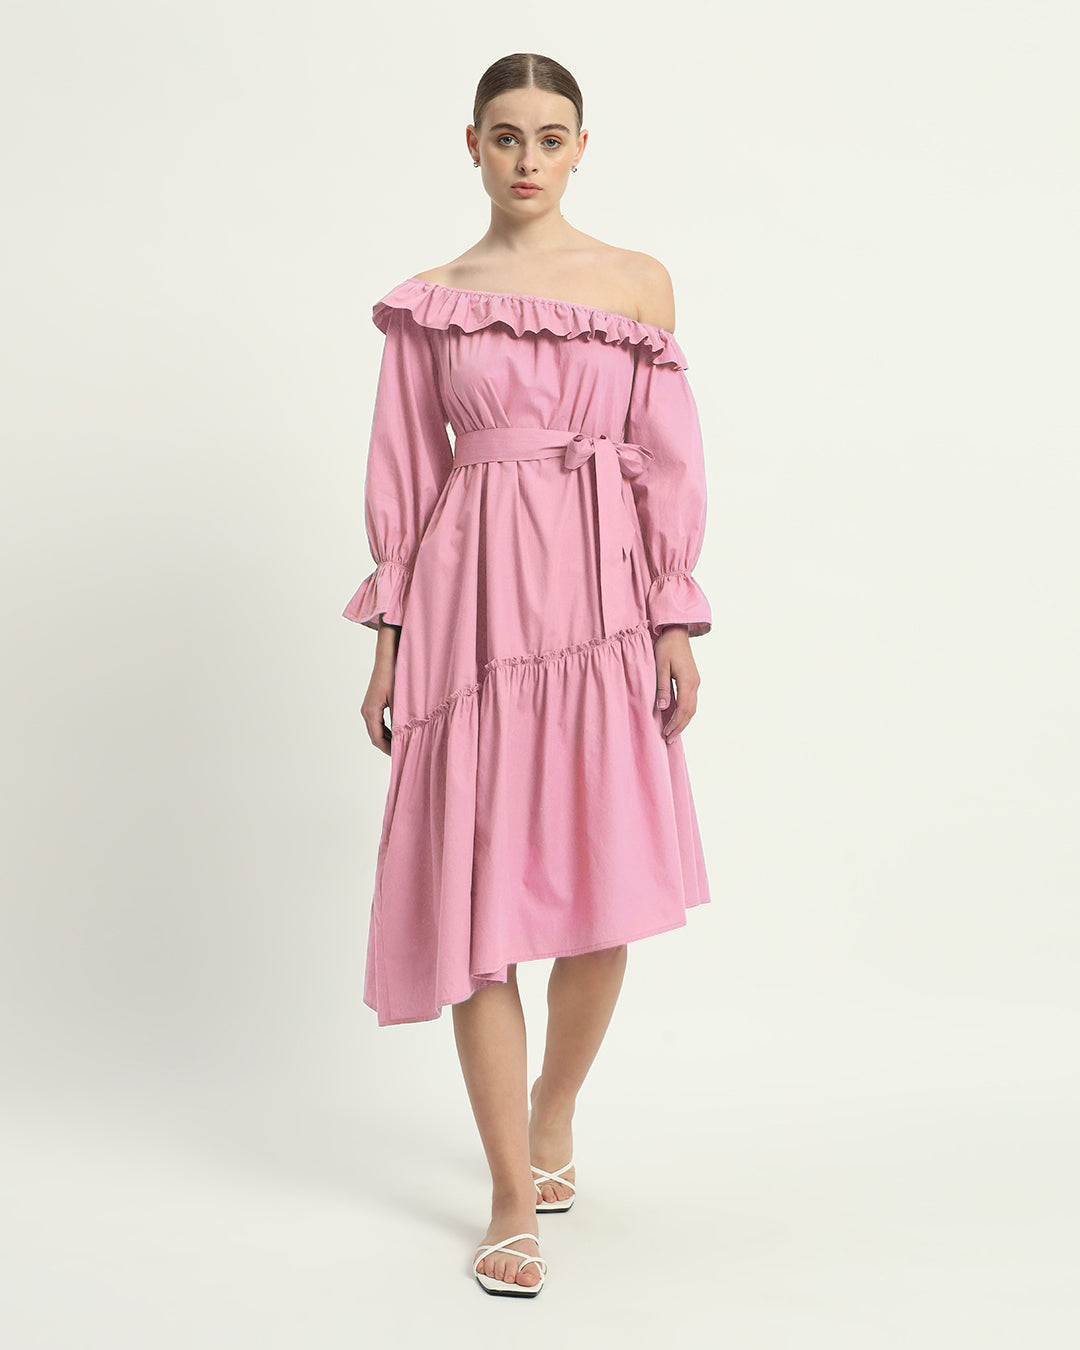 The Stellata Fondant Pink Cotton Dress